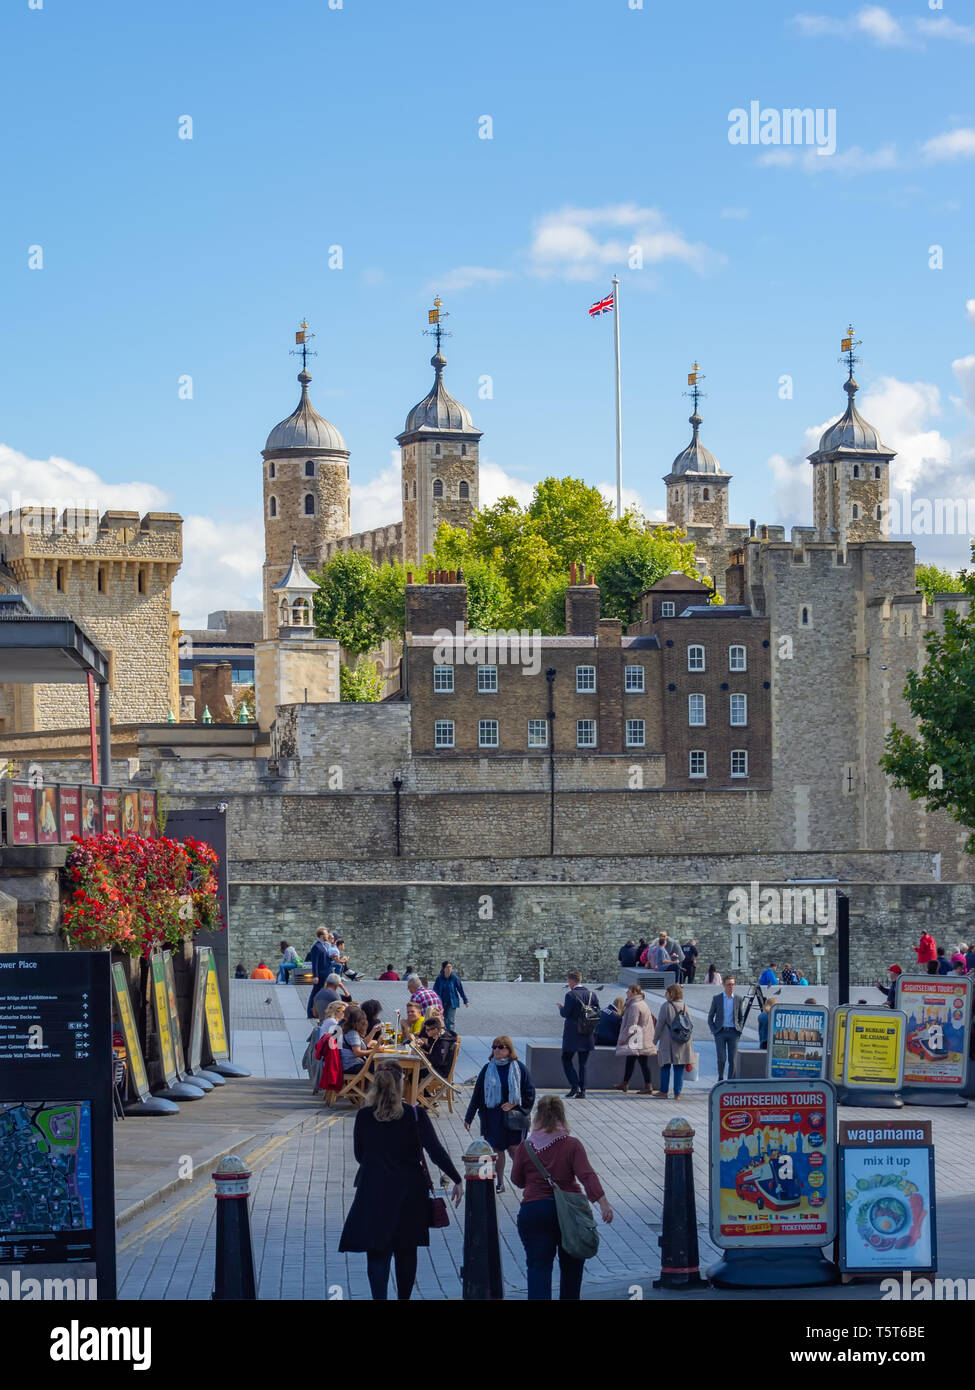 Der Tower von London - eine Burg und der königliche Palast, der zum UNESCO-Weltkulturerbe zählt, der auf einem hellen, sonnigen Tag. Stockfoto